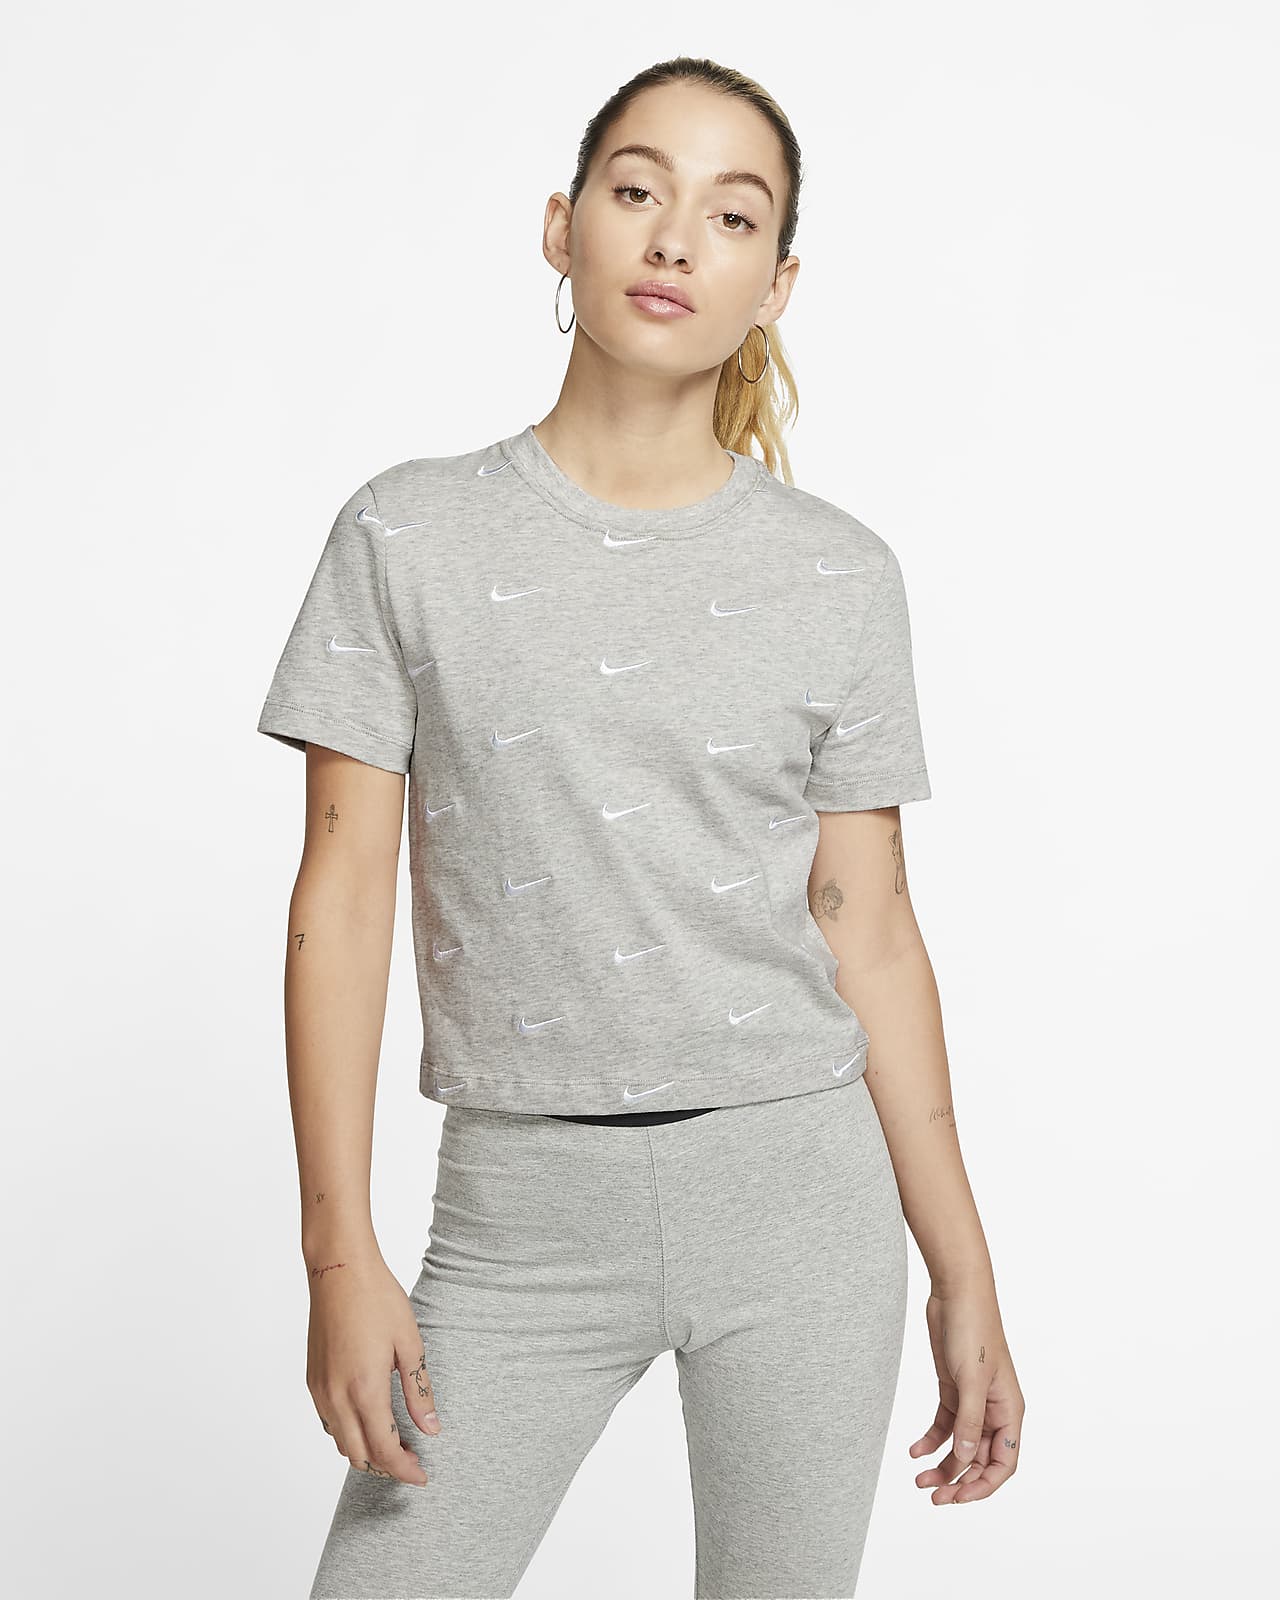 grey nike t shirt women's